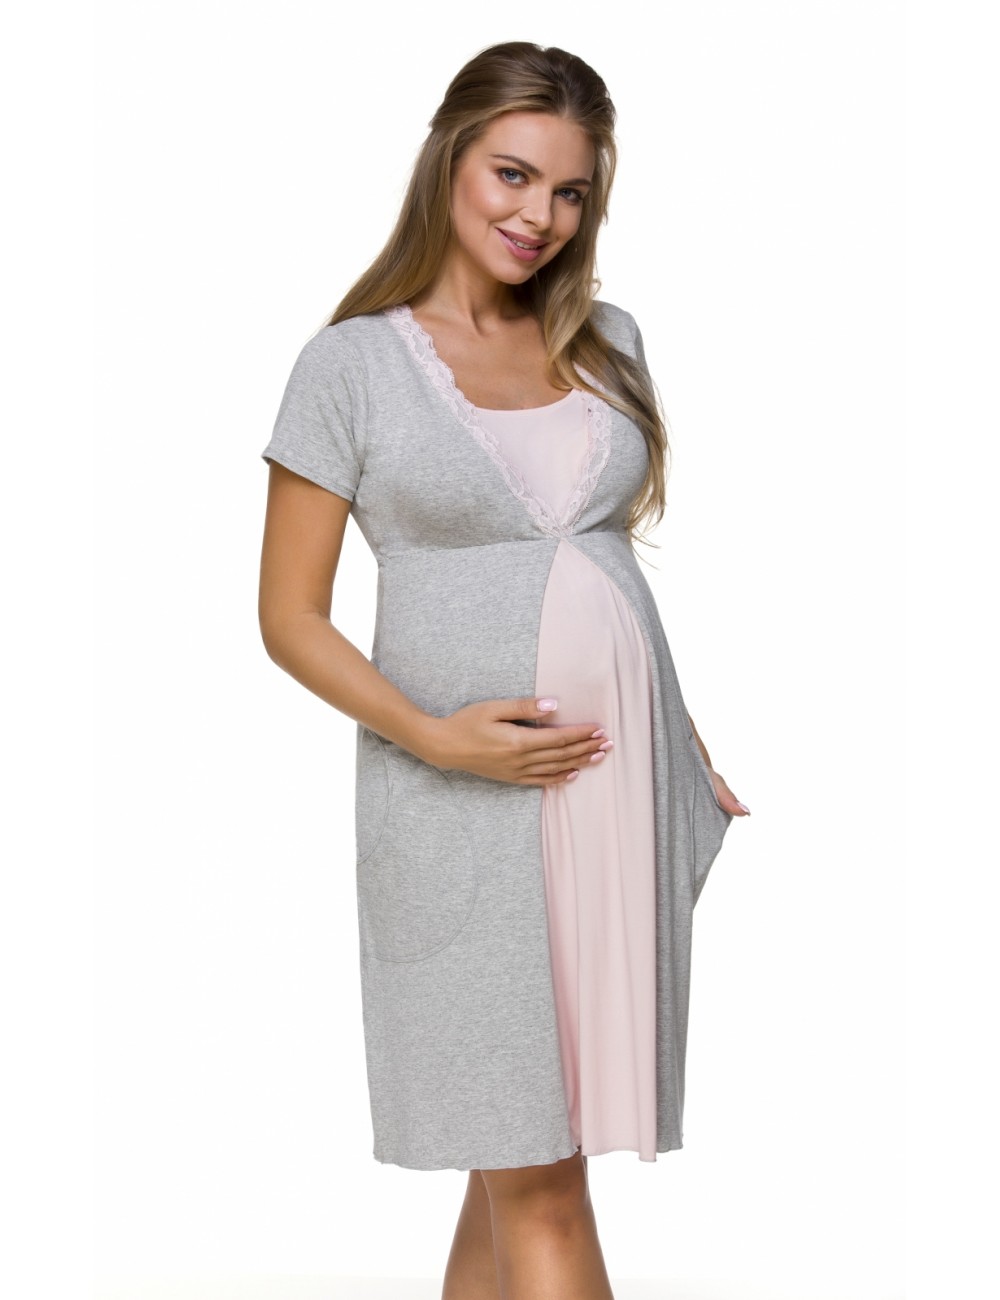 Nočná košeľa na dojčenie - Dámska materská košieľka - Tehotenská móda 3125 - celá postava